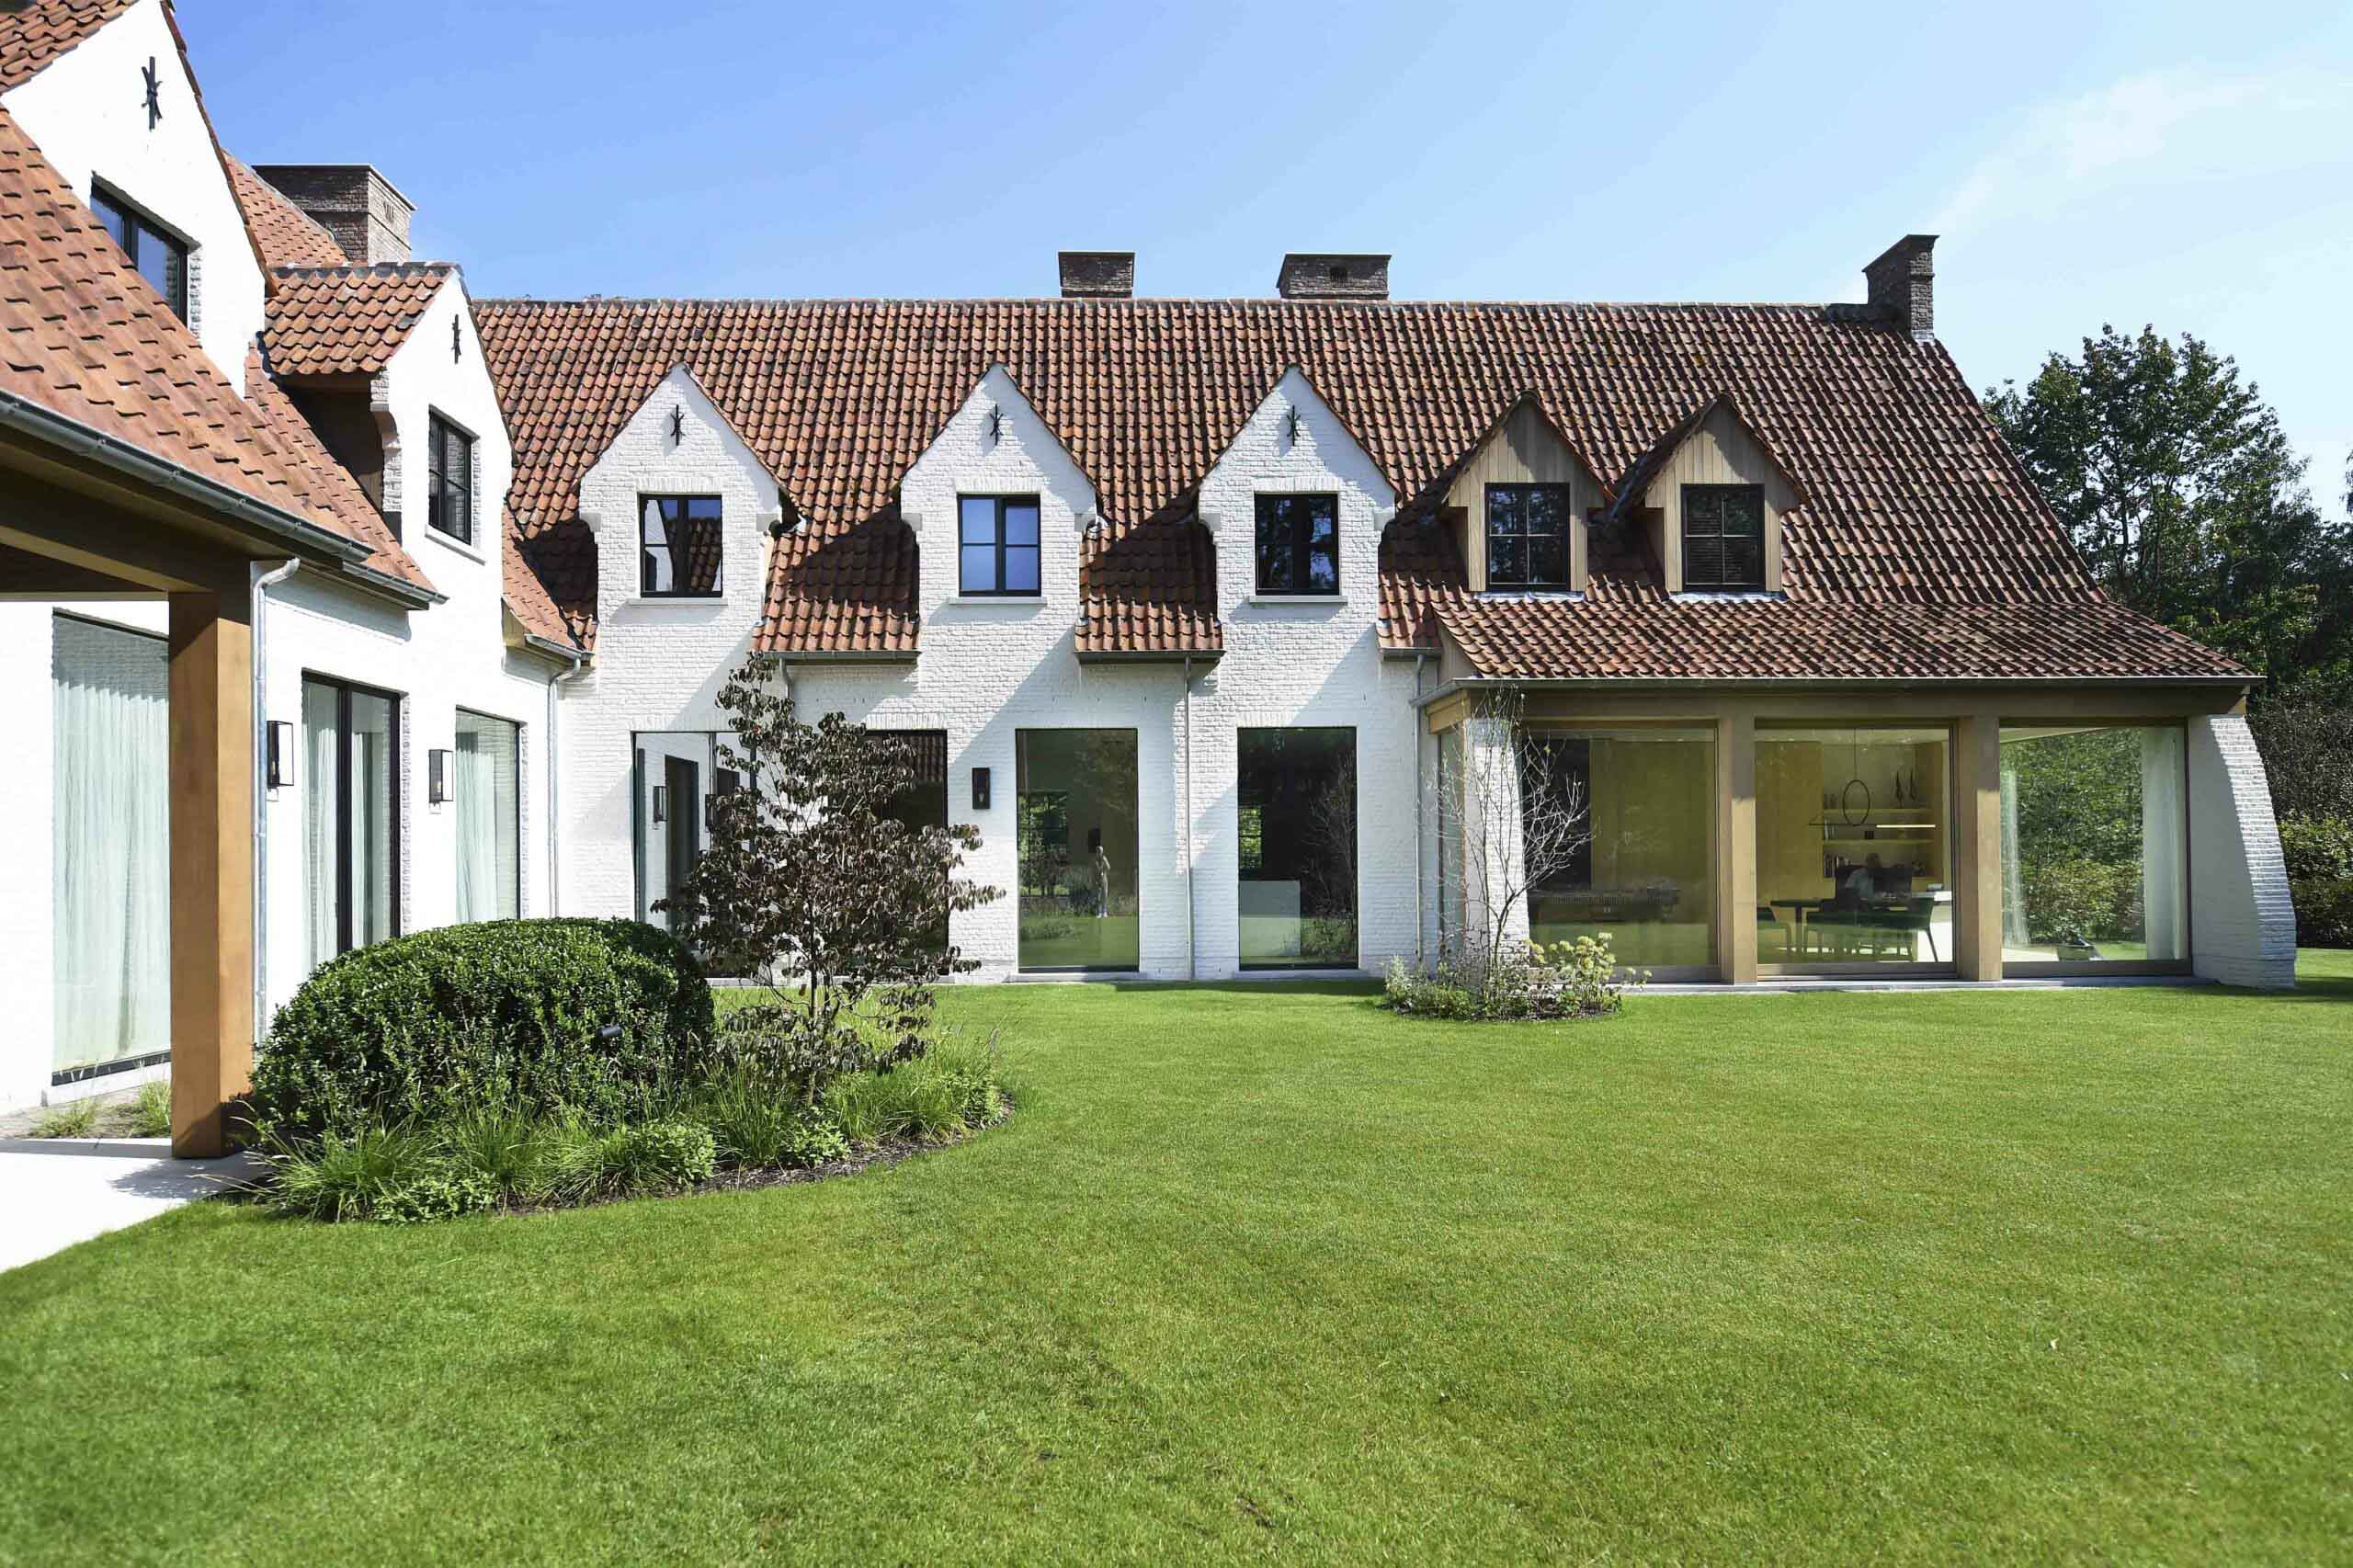 Een prachtig wit bakstenen huis met een betegeld dak, voorzien van een moderne glazen uitbreiding. De goed onderhouden tuin omvat een weelderig groen gazon en diverse planten.